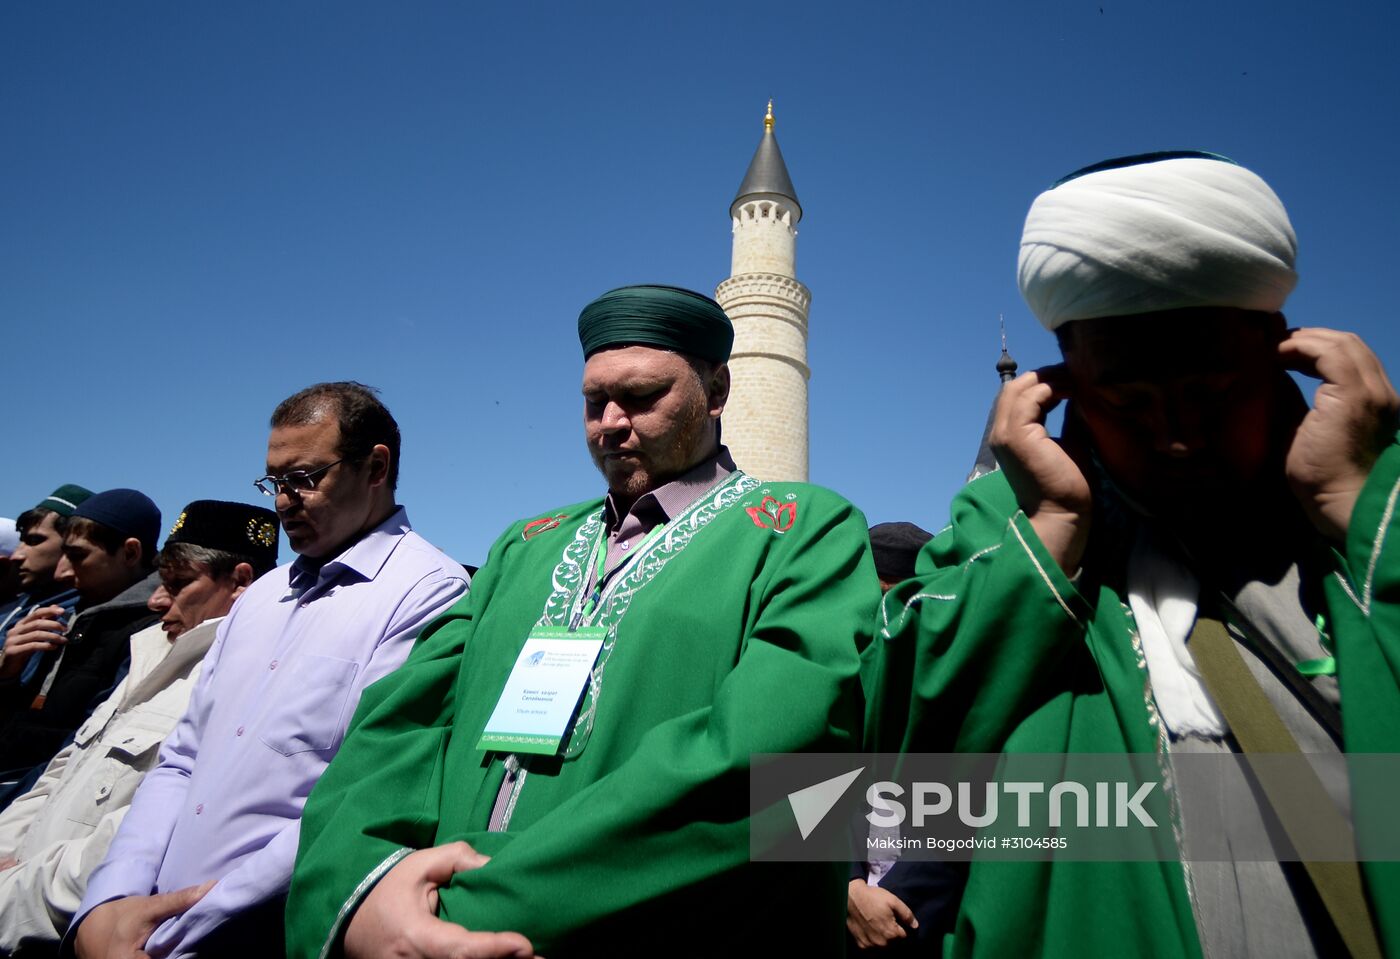 Izge Bolgar Cıyenı traditional Muslim convention in Tatarstan